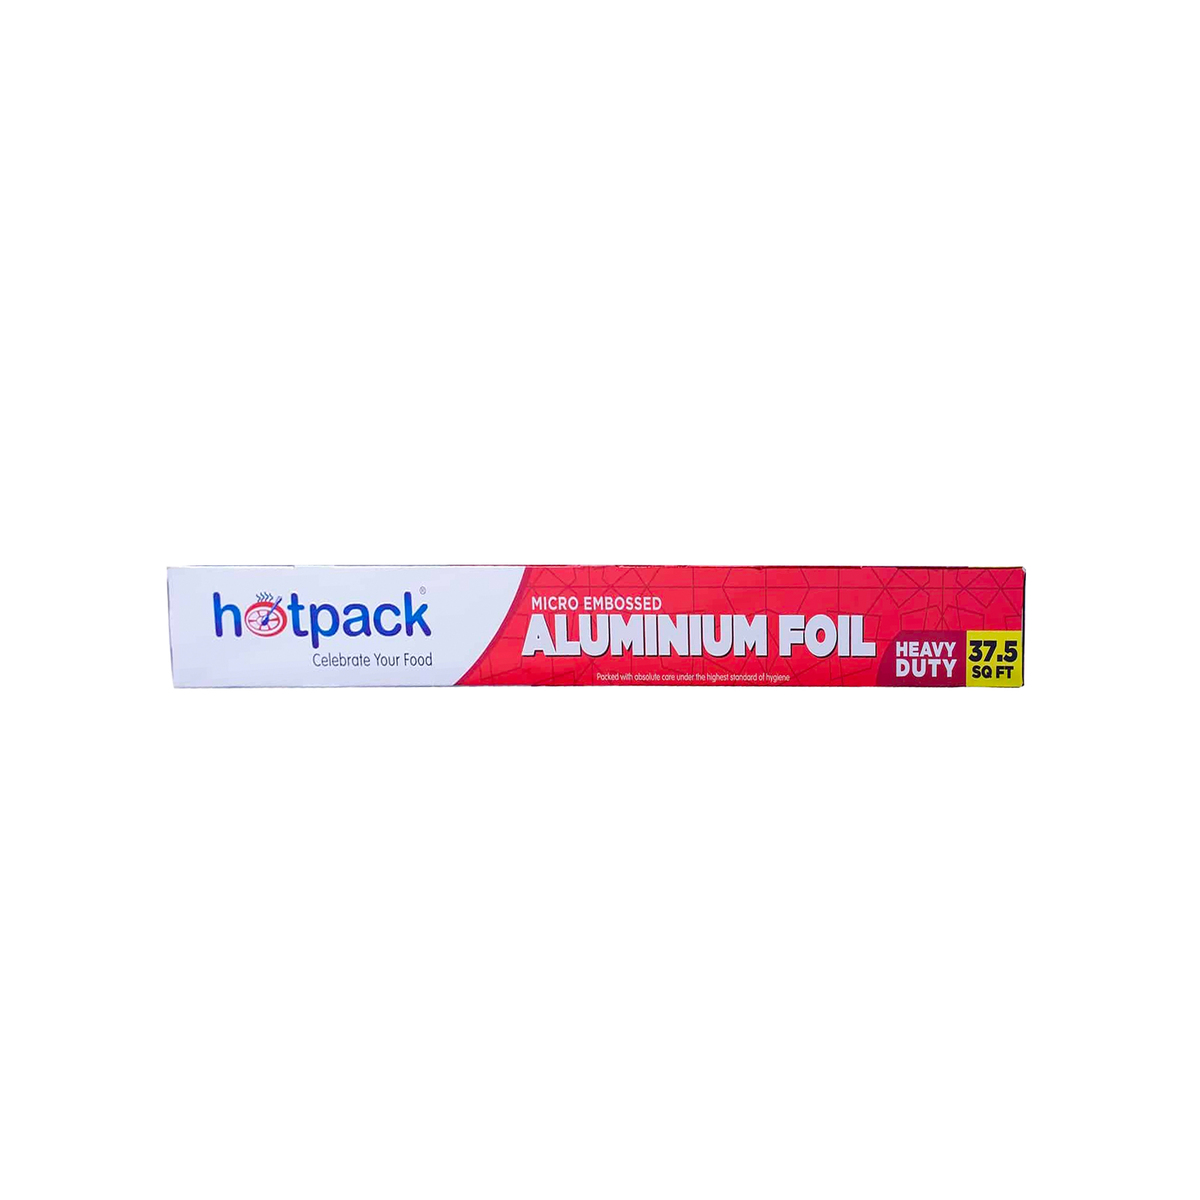 Hotpack Aluminium foil 37.5sqft 2+1